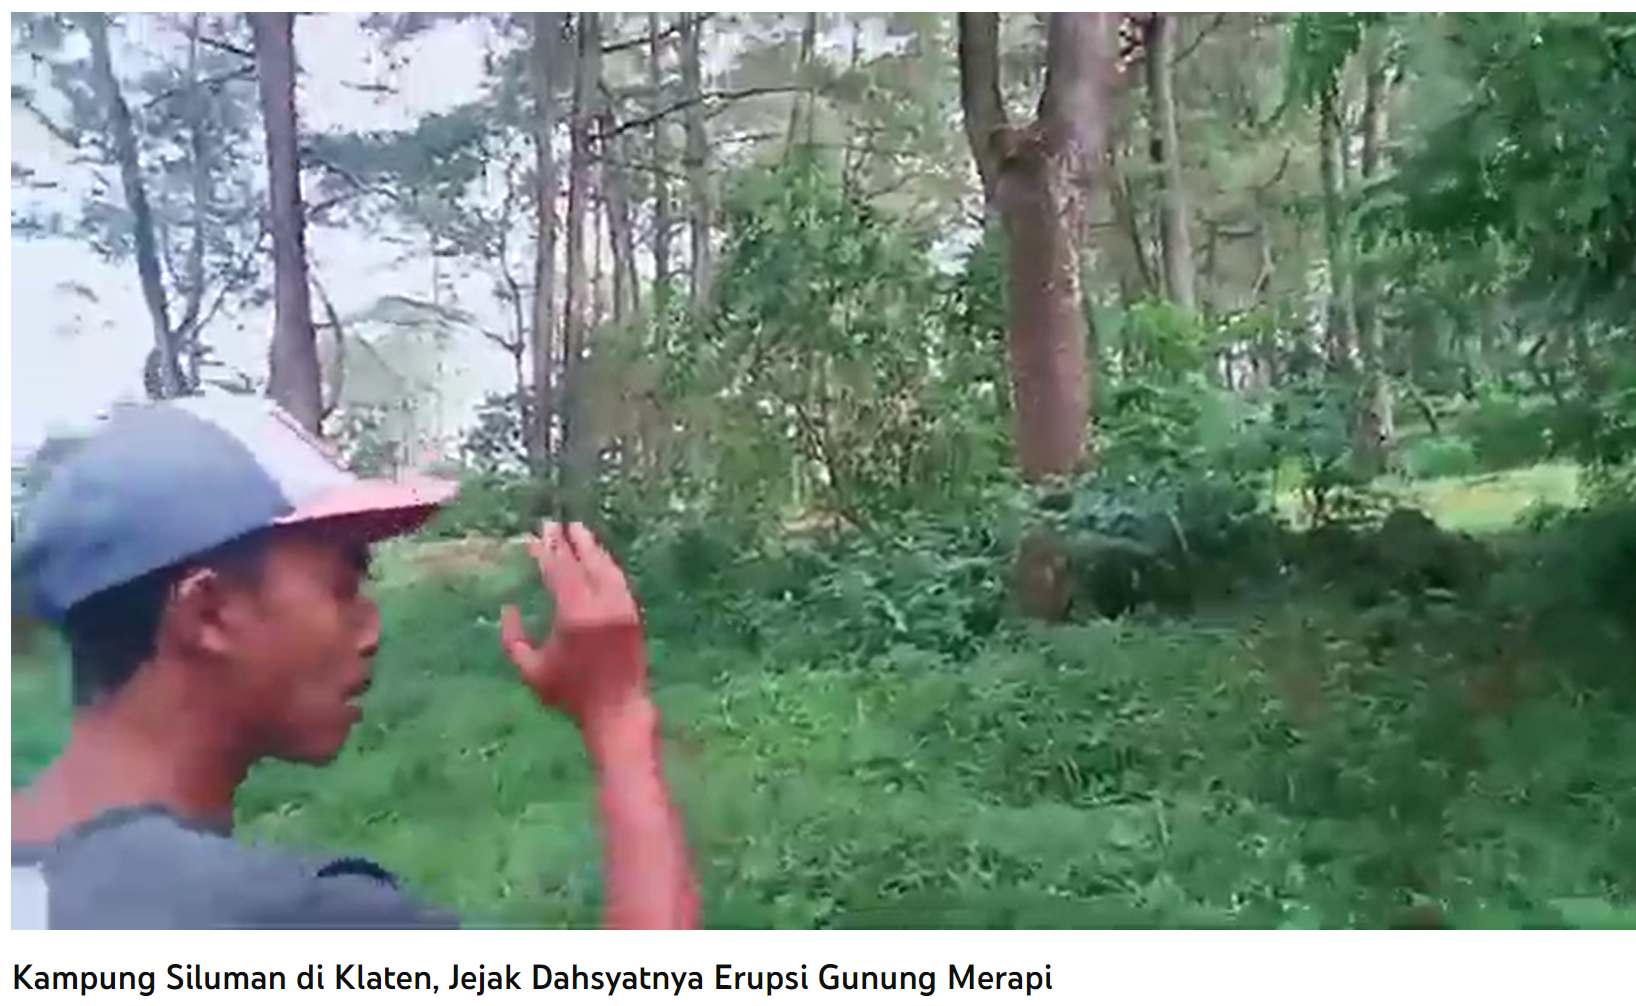 Taman Nasional Gunung Merapi dan Misteri Kampung Siluman Klaten: Masa Lalu yang Belum Terungkap